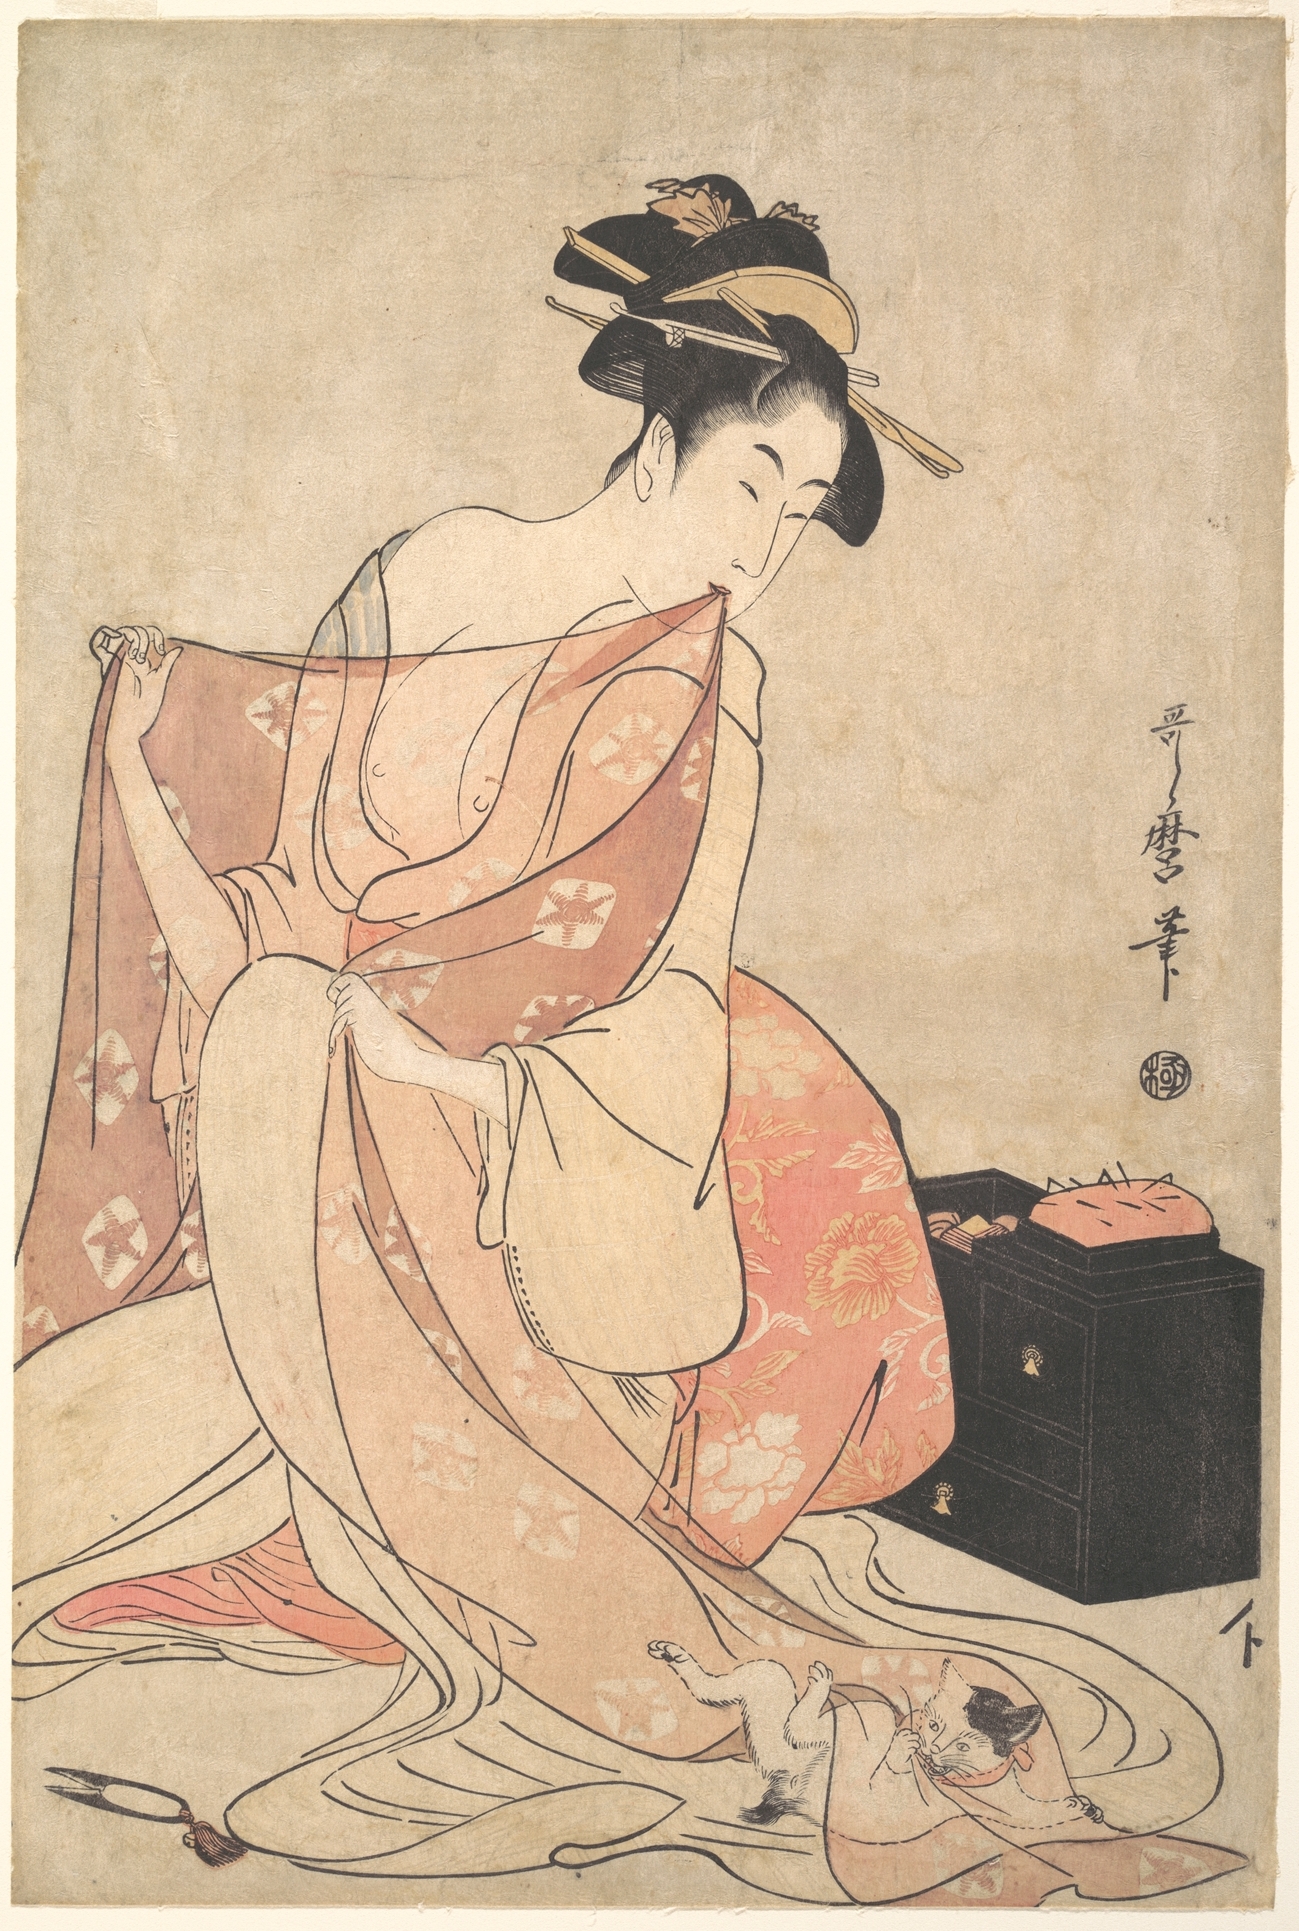 امرأة وقطة by Kitagawa Utamaro - حوالي 1793-1794م - 38.4 x 25.9 cm 